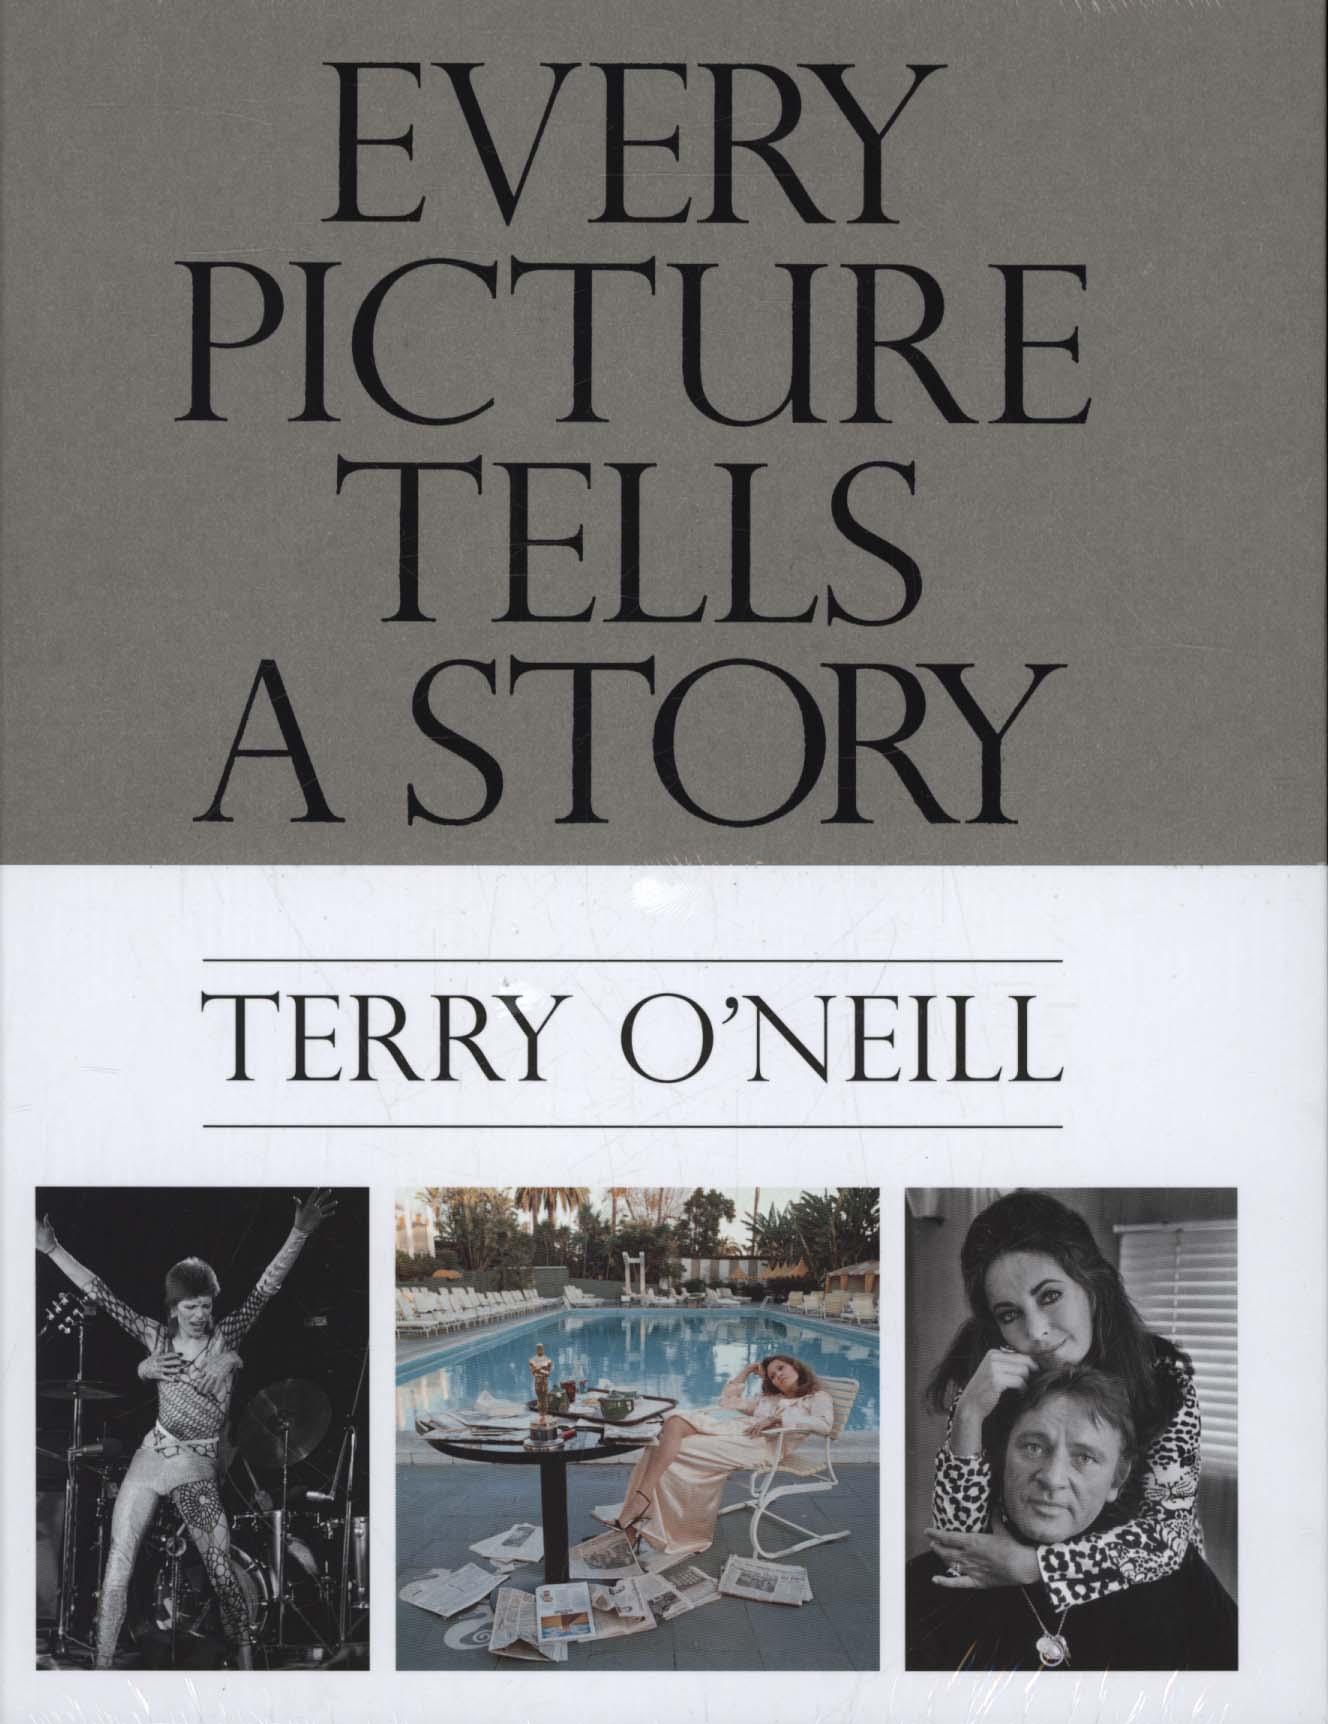 Terry O'Neill